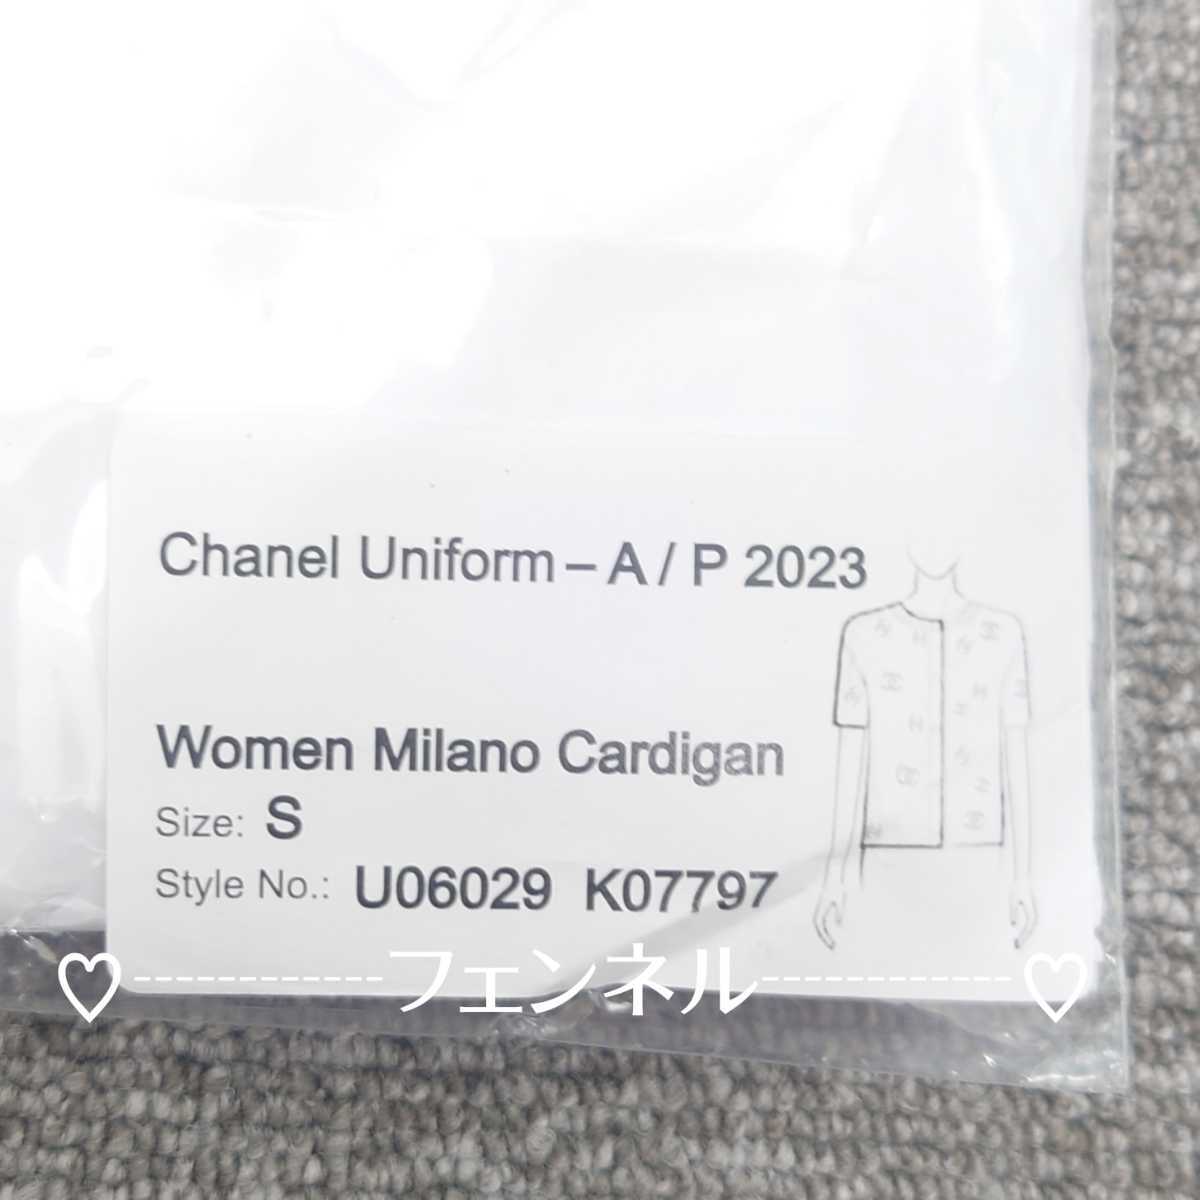 CHANEL трудно найти не продается штат служащих . индустрия участник специальный форма витрина костюм трубчатая обводка розовый Logo кардиган S размер Chanel 